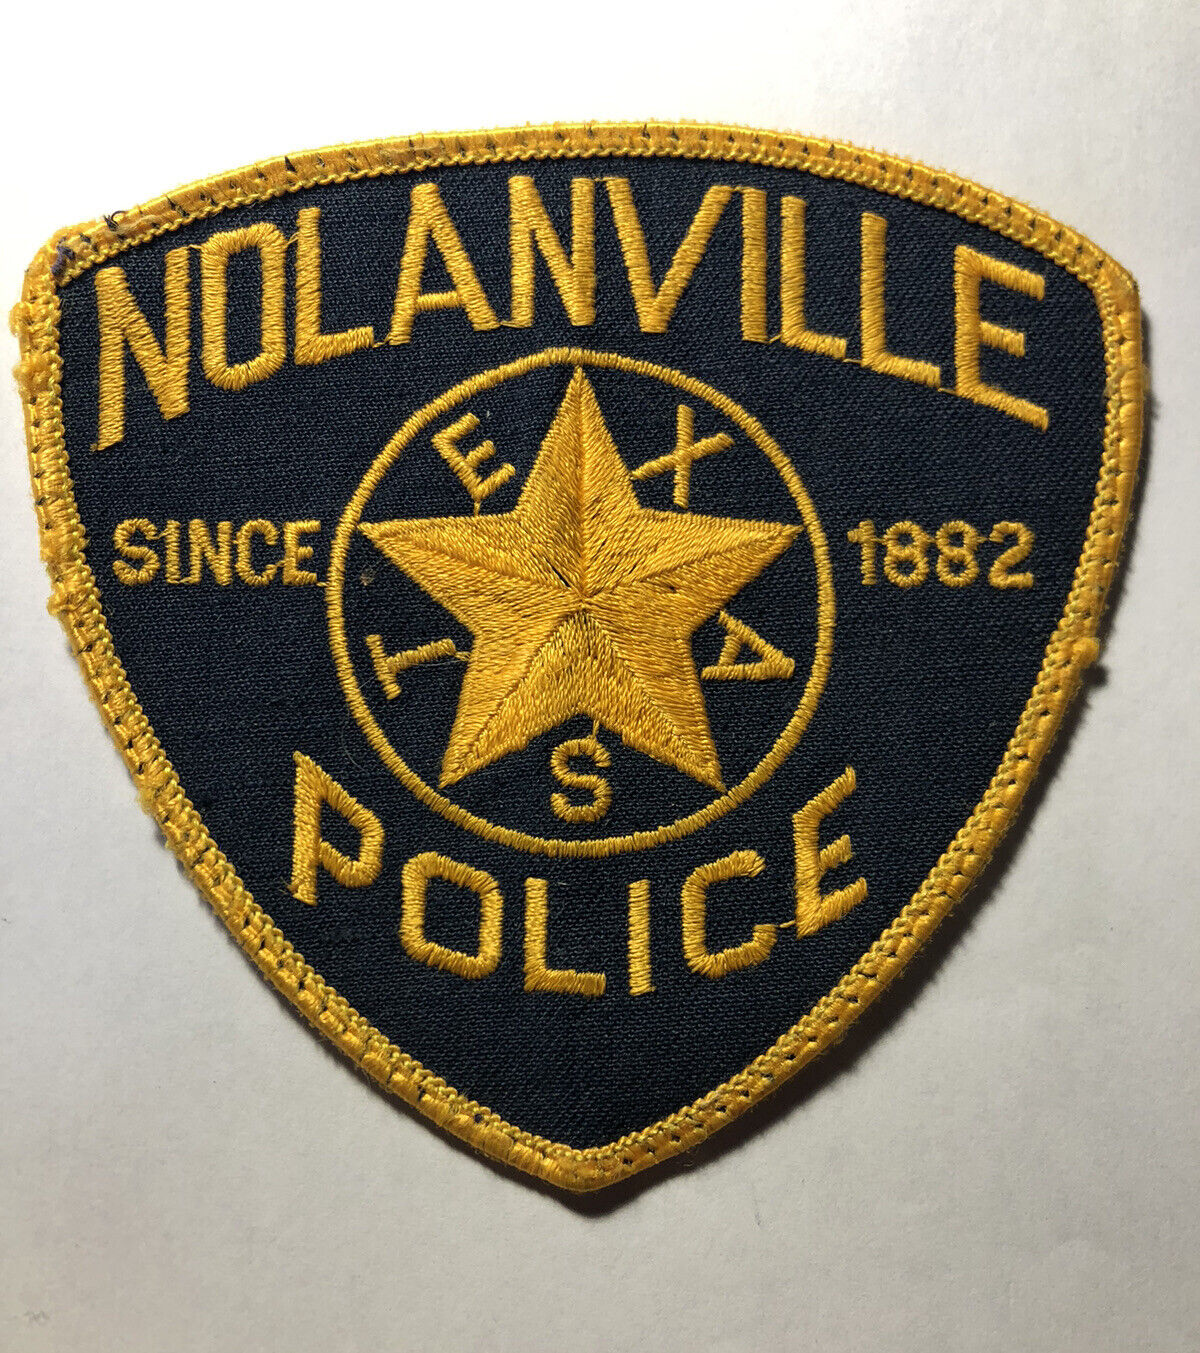 Nolanville Texas Police Patch